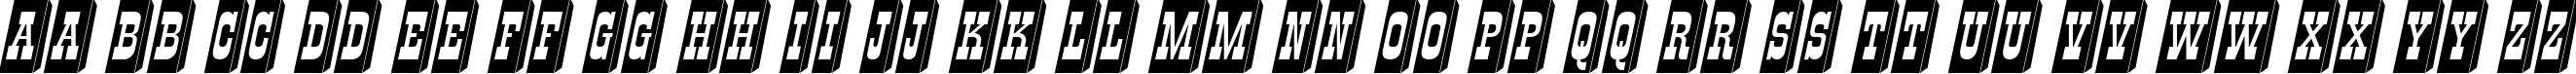 Пример написания английского алфавита шрифтом a_GildiaTiulPillar3D Italic